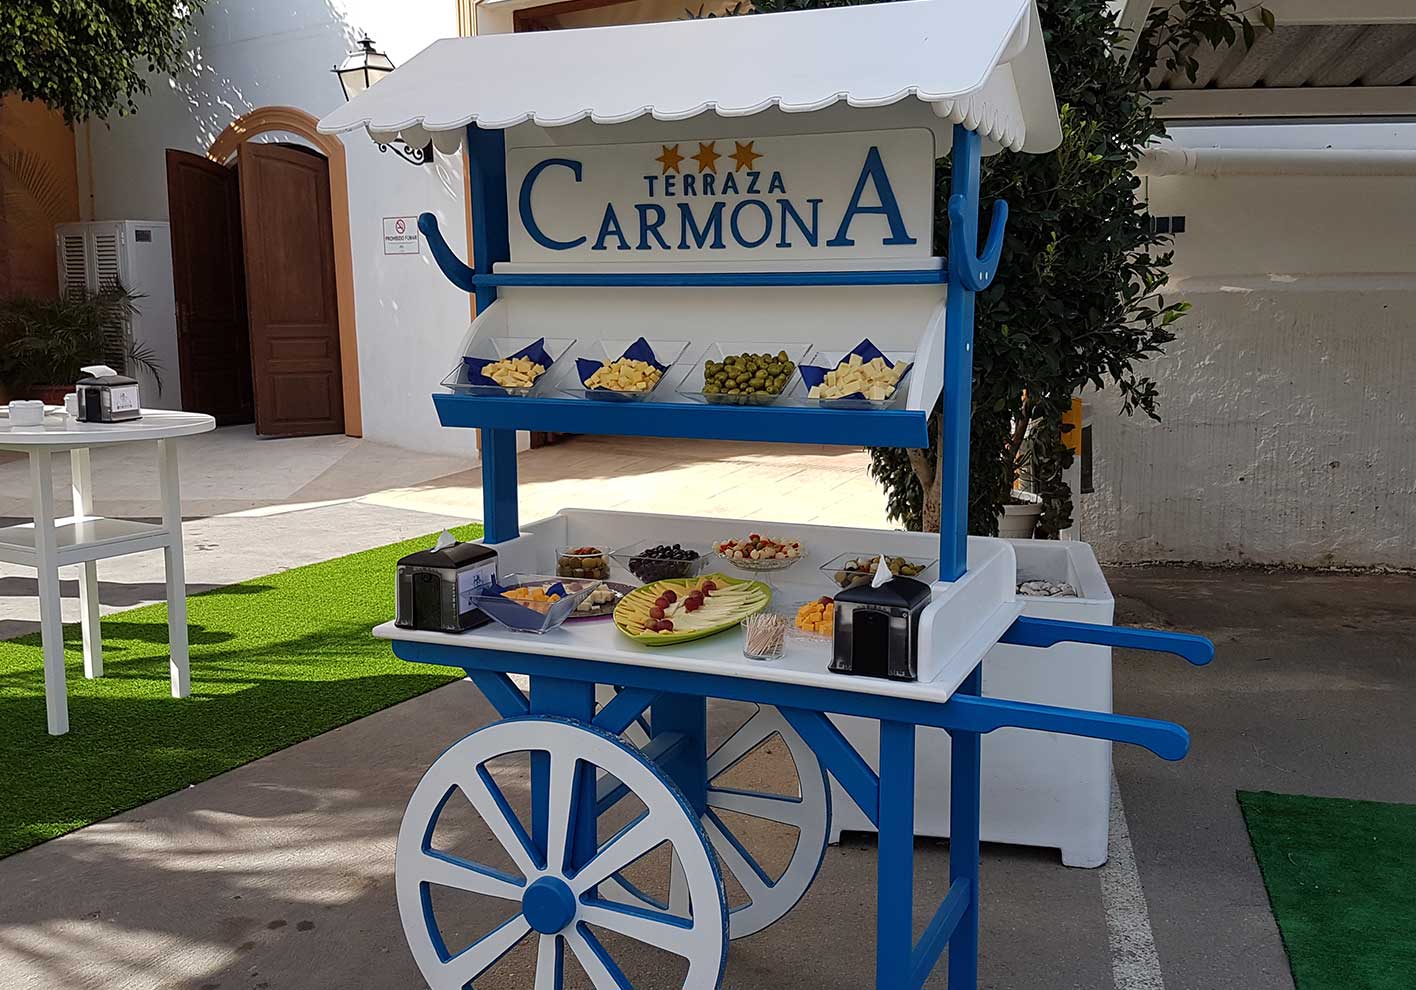 Cinema Marquee - Hotel Restaurante Terraza Carmona in Vera, Almeria